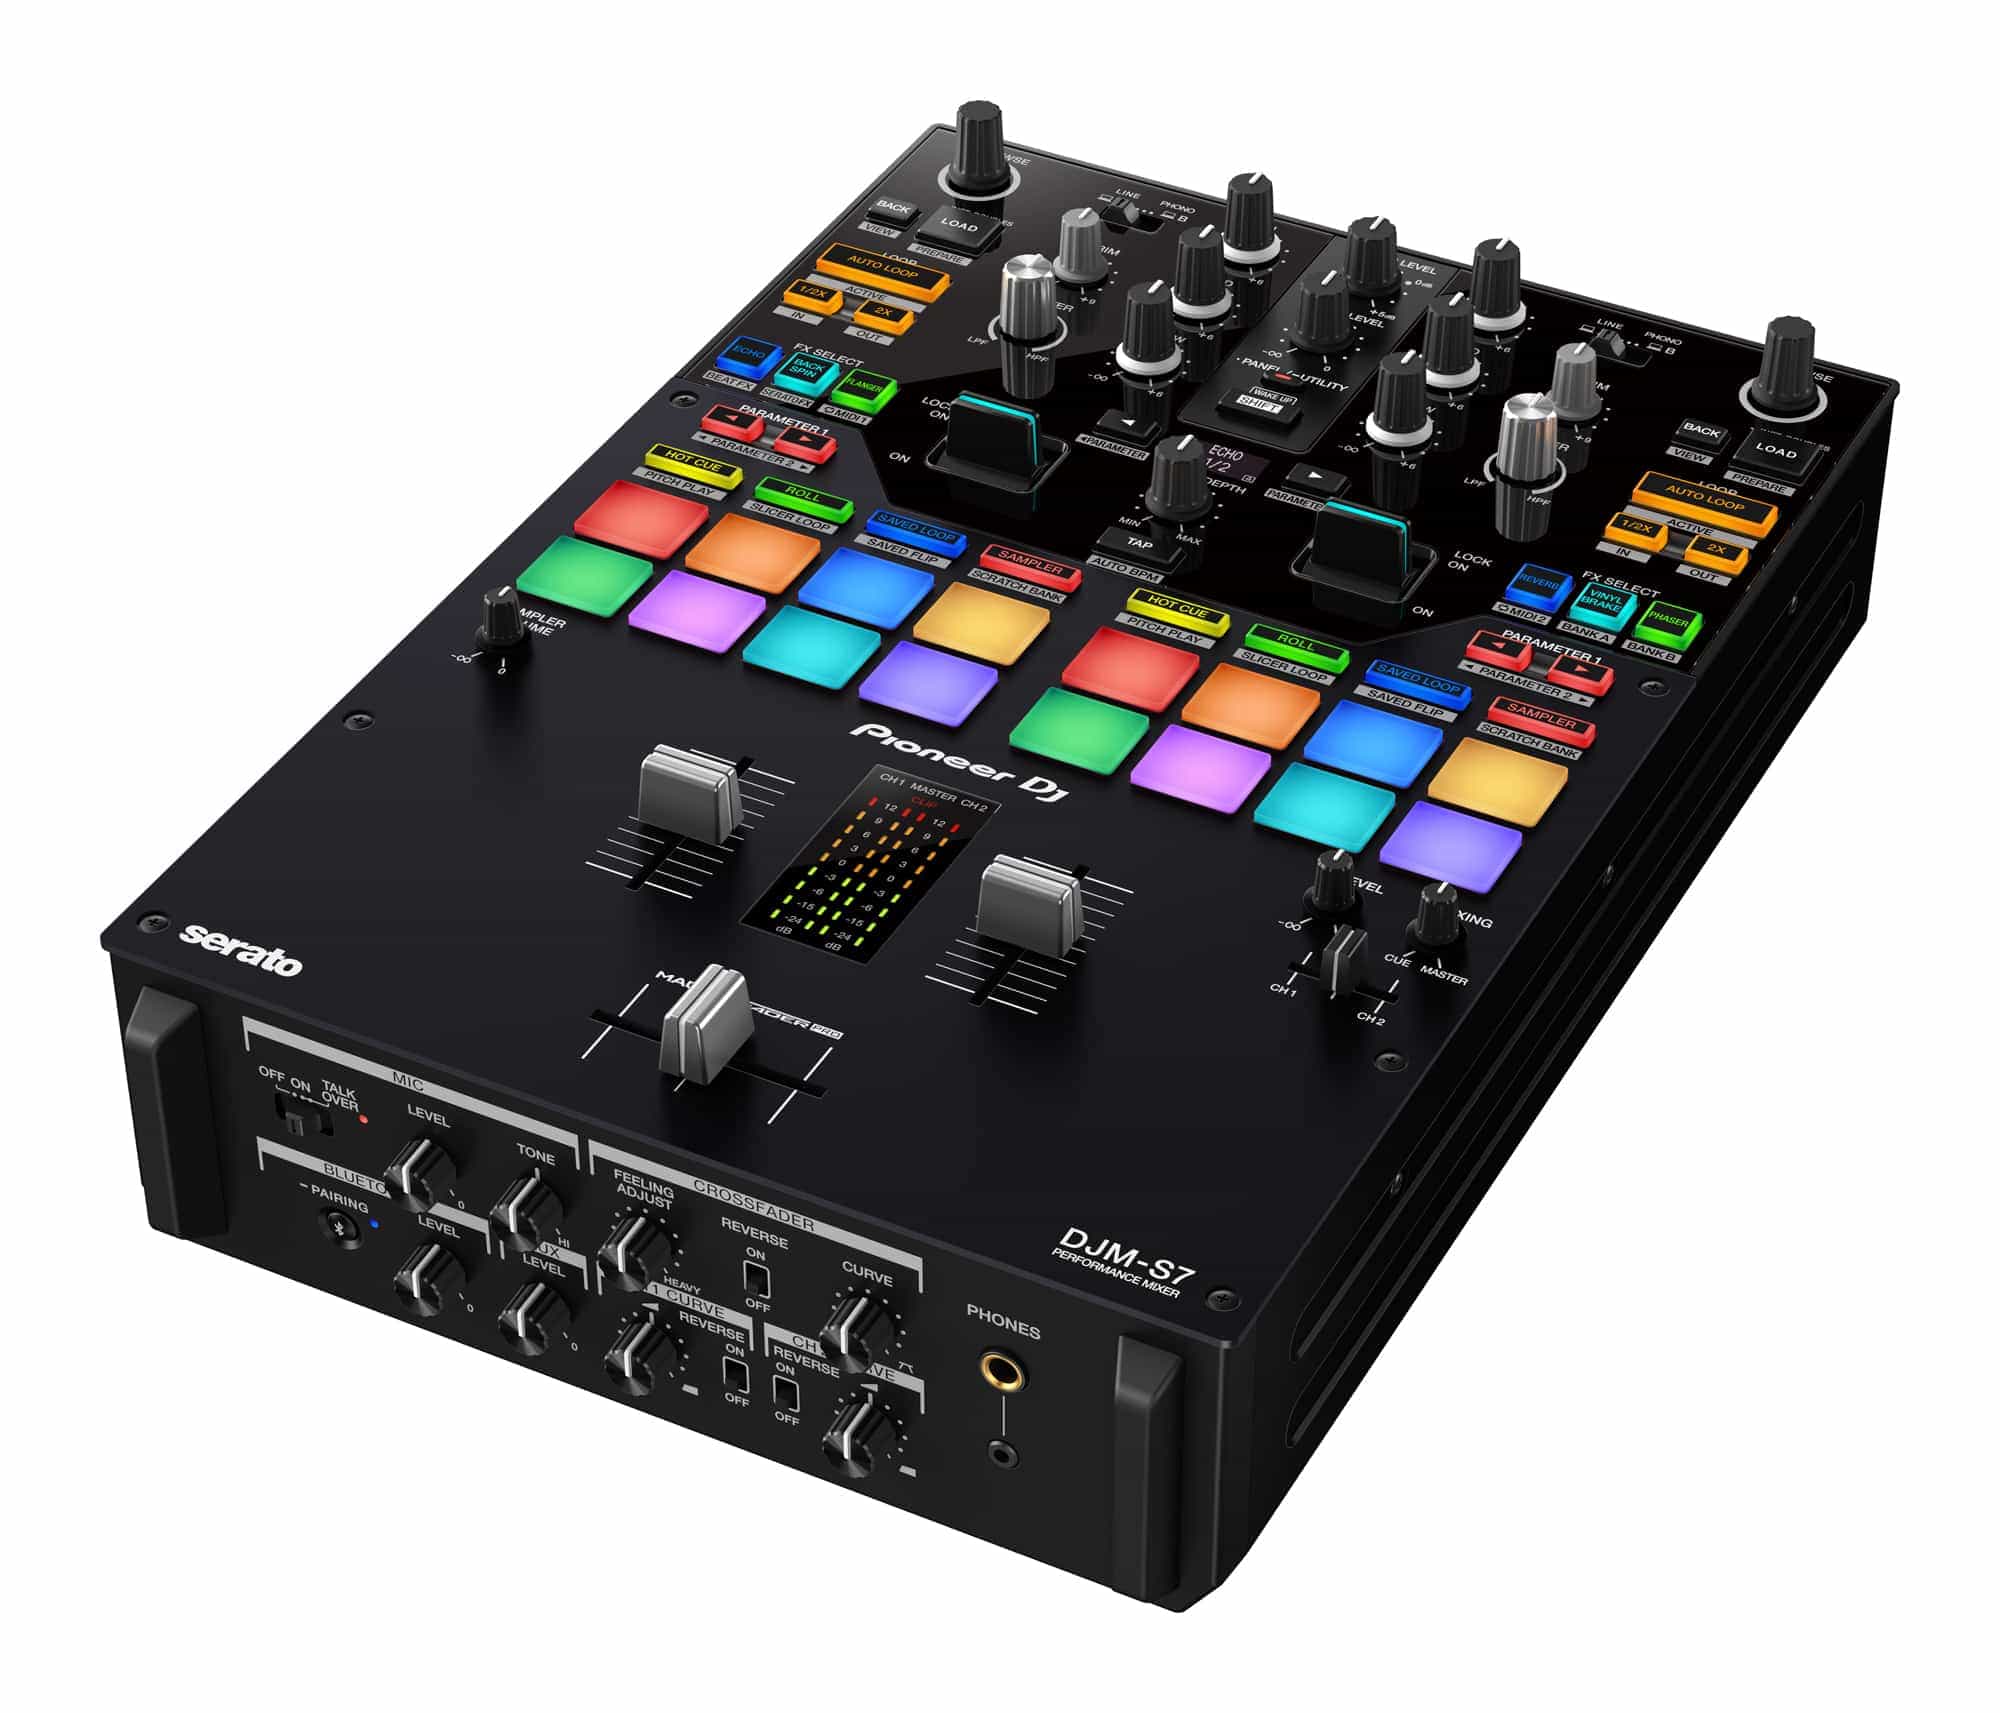 DJM-S7 de DJ Pioneer: un mezclador de batalla de 2 canales con la nueva función "Loop Midi" 19